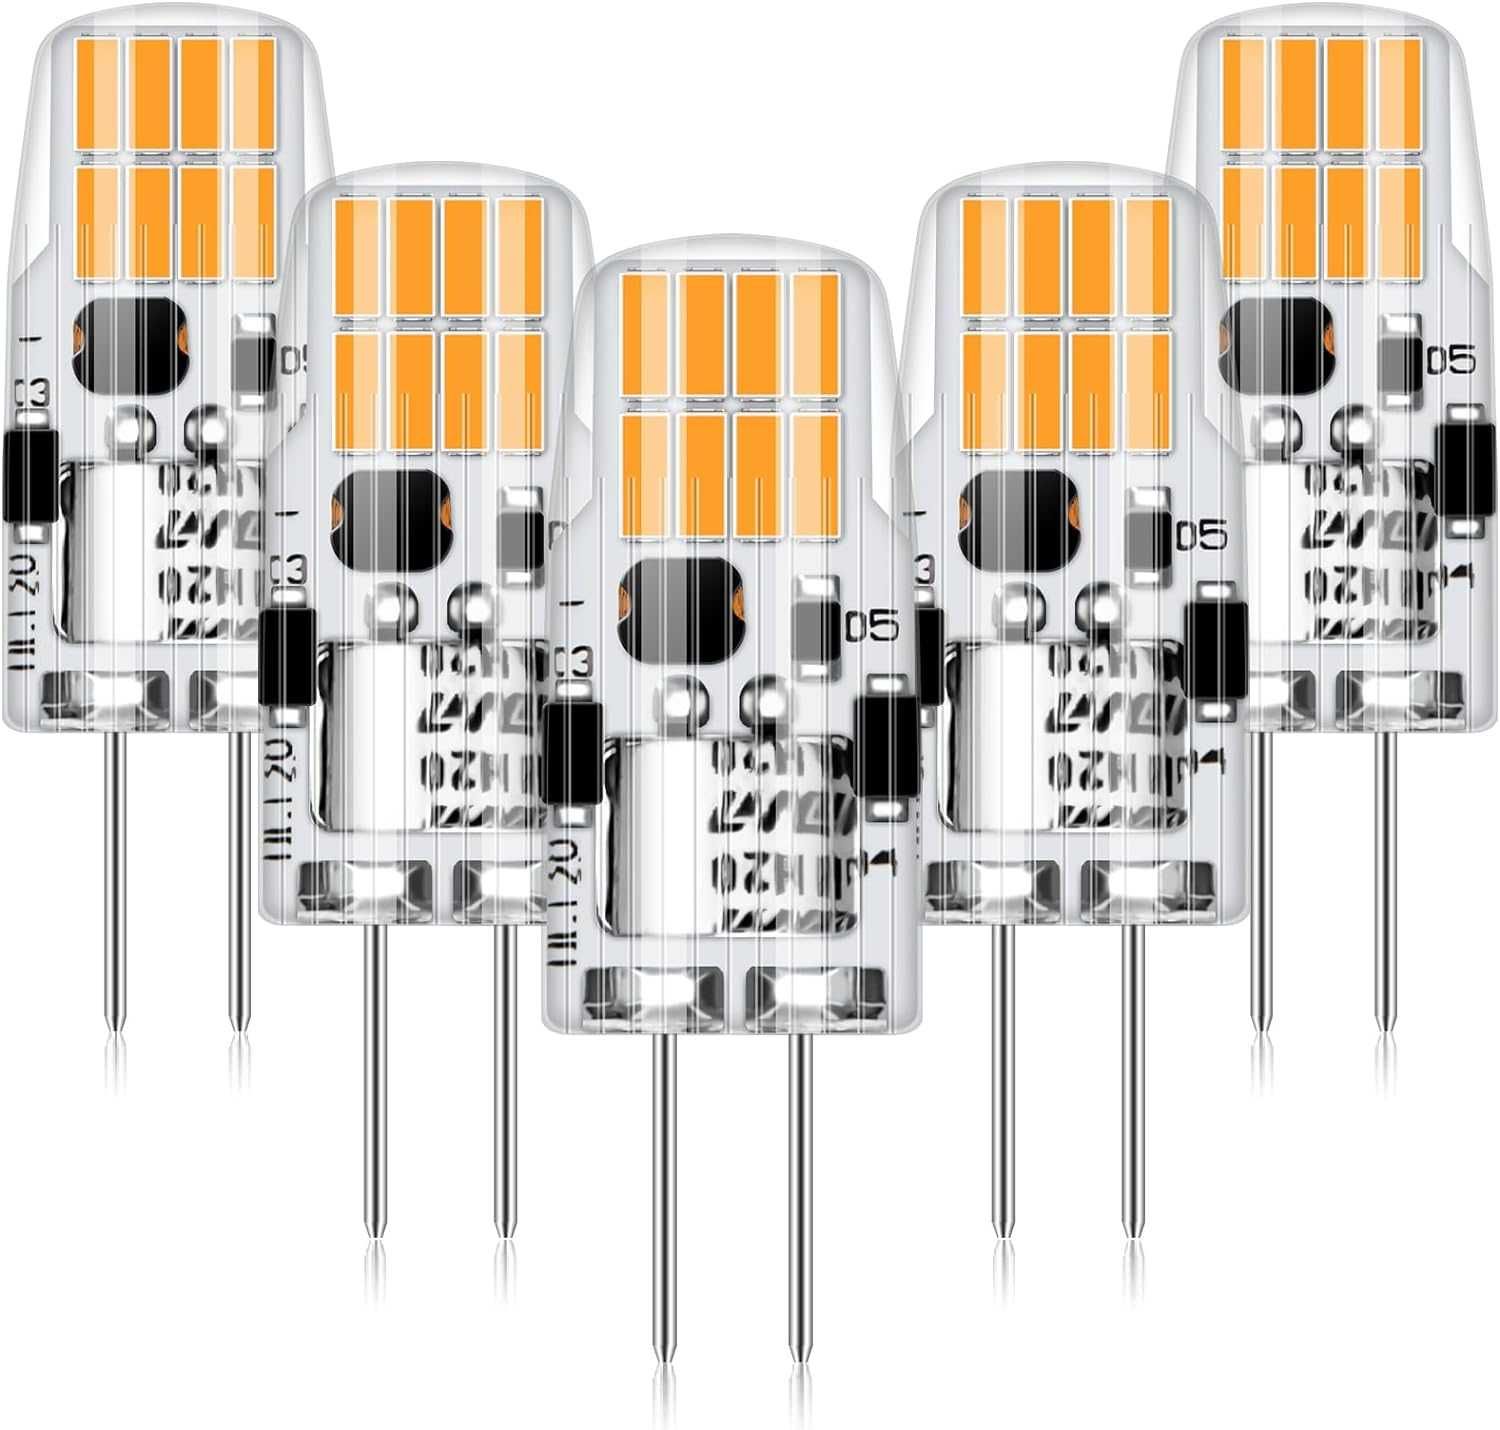 Nowe żarówki LED G4 / 2W / zestaw 5 sztuk / ciepła biel !1077!